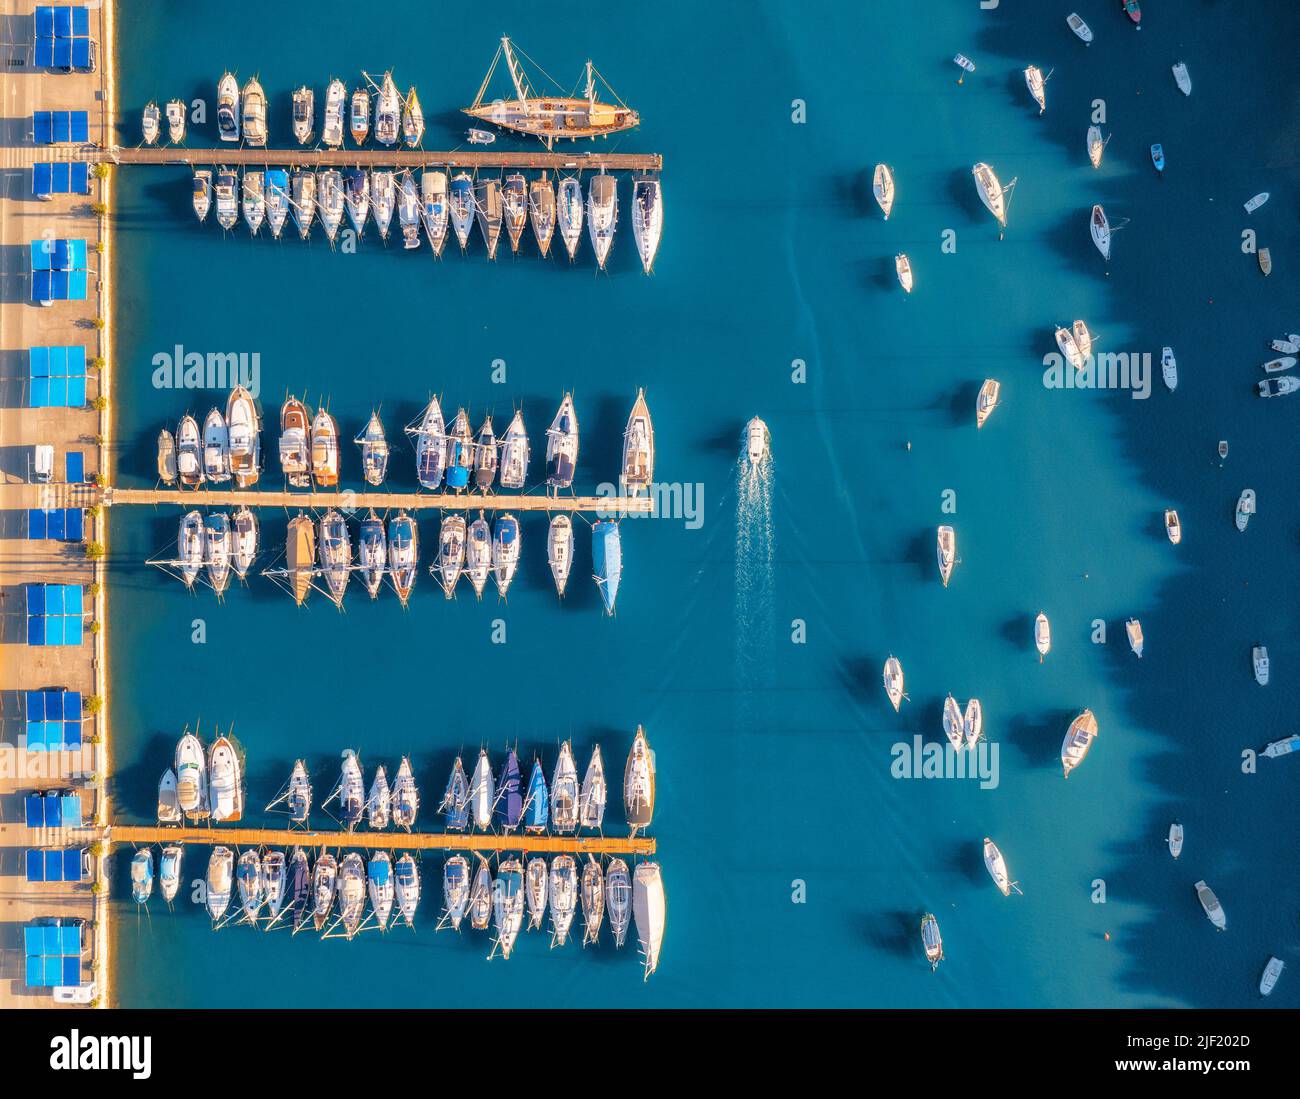 Vista aérea de barcos y yates en el muelle al atardecer en verano Foto de stock